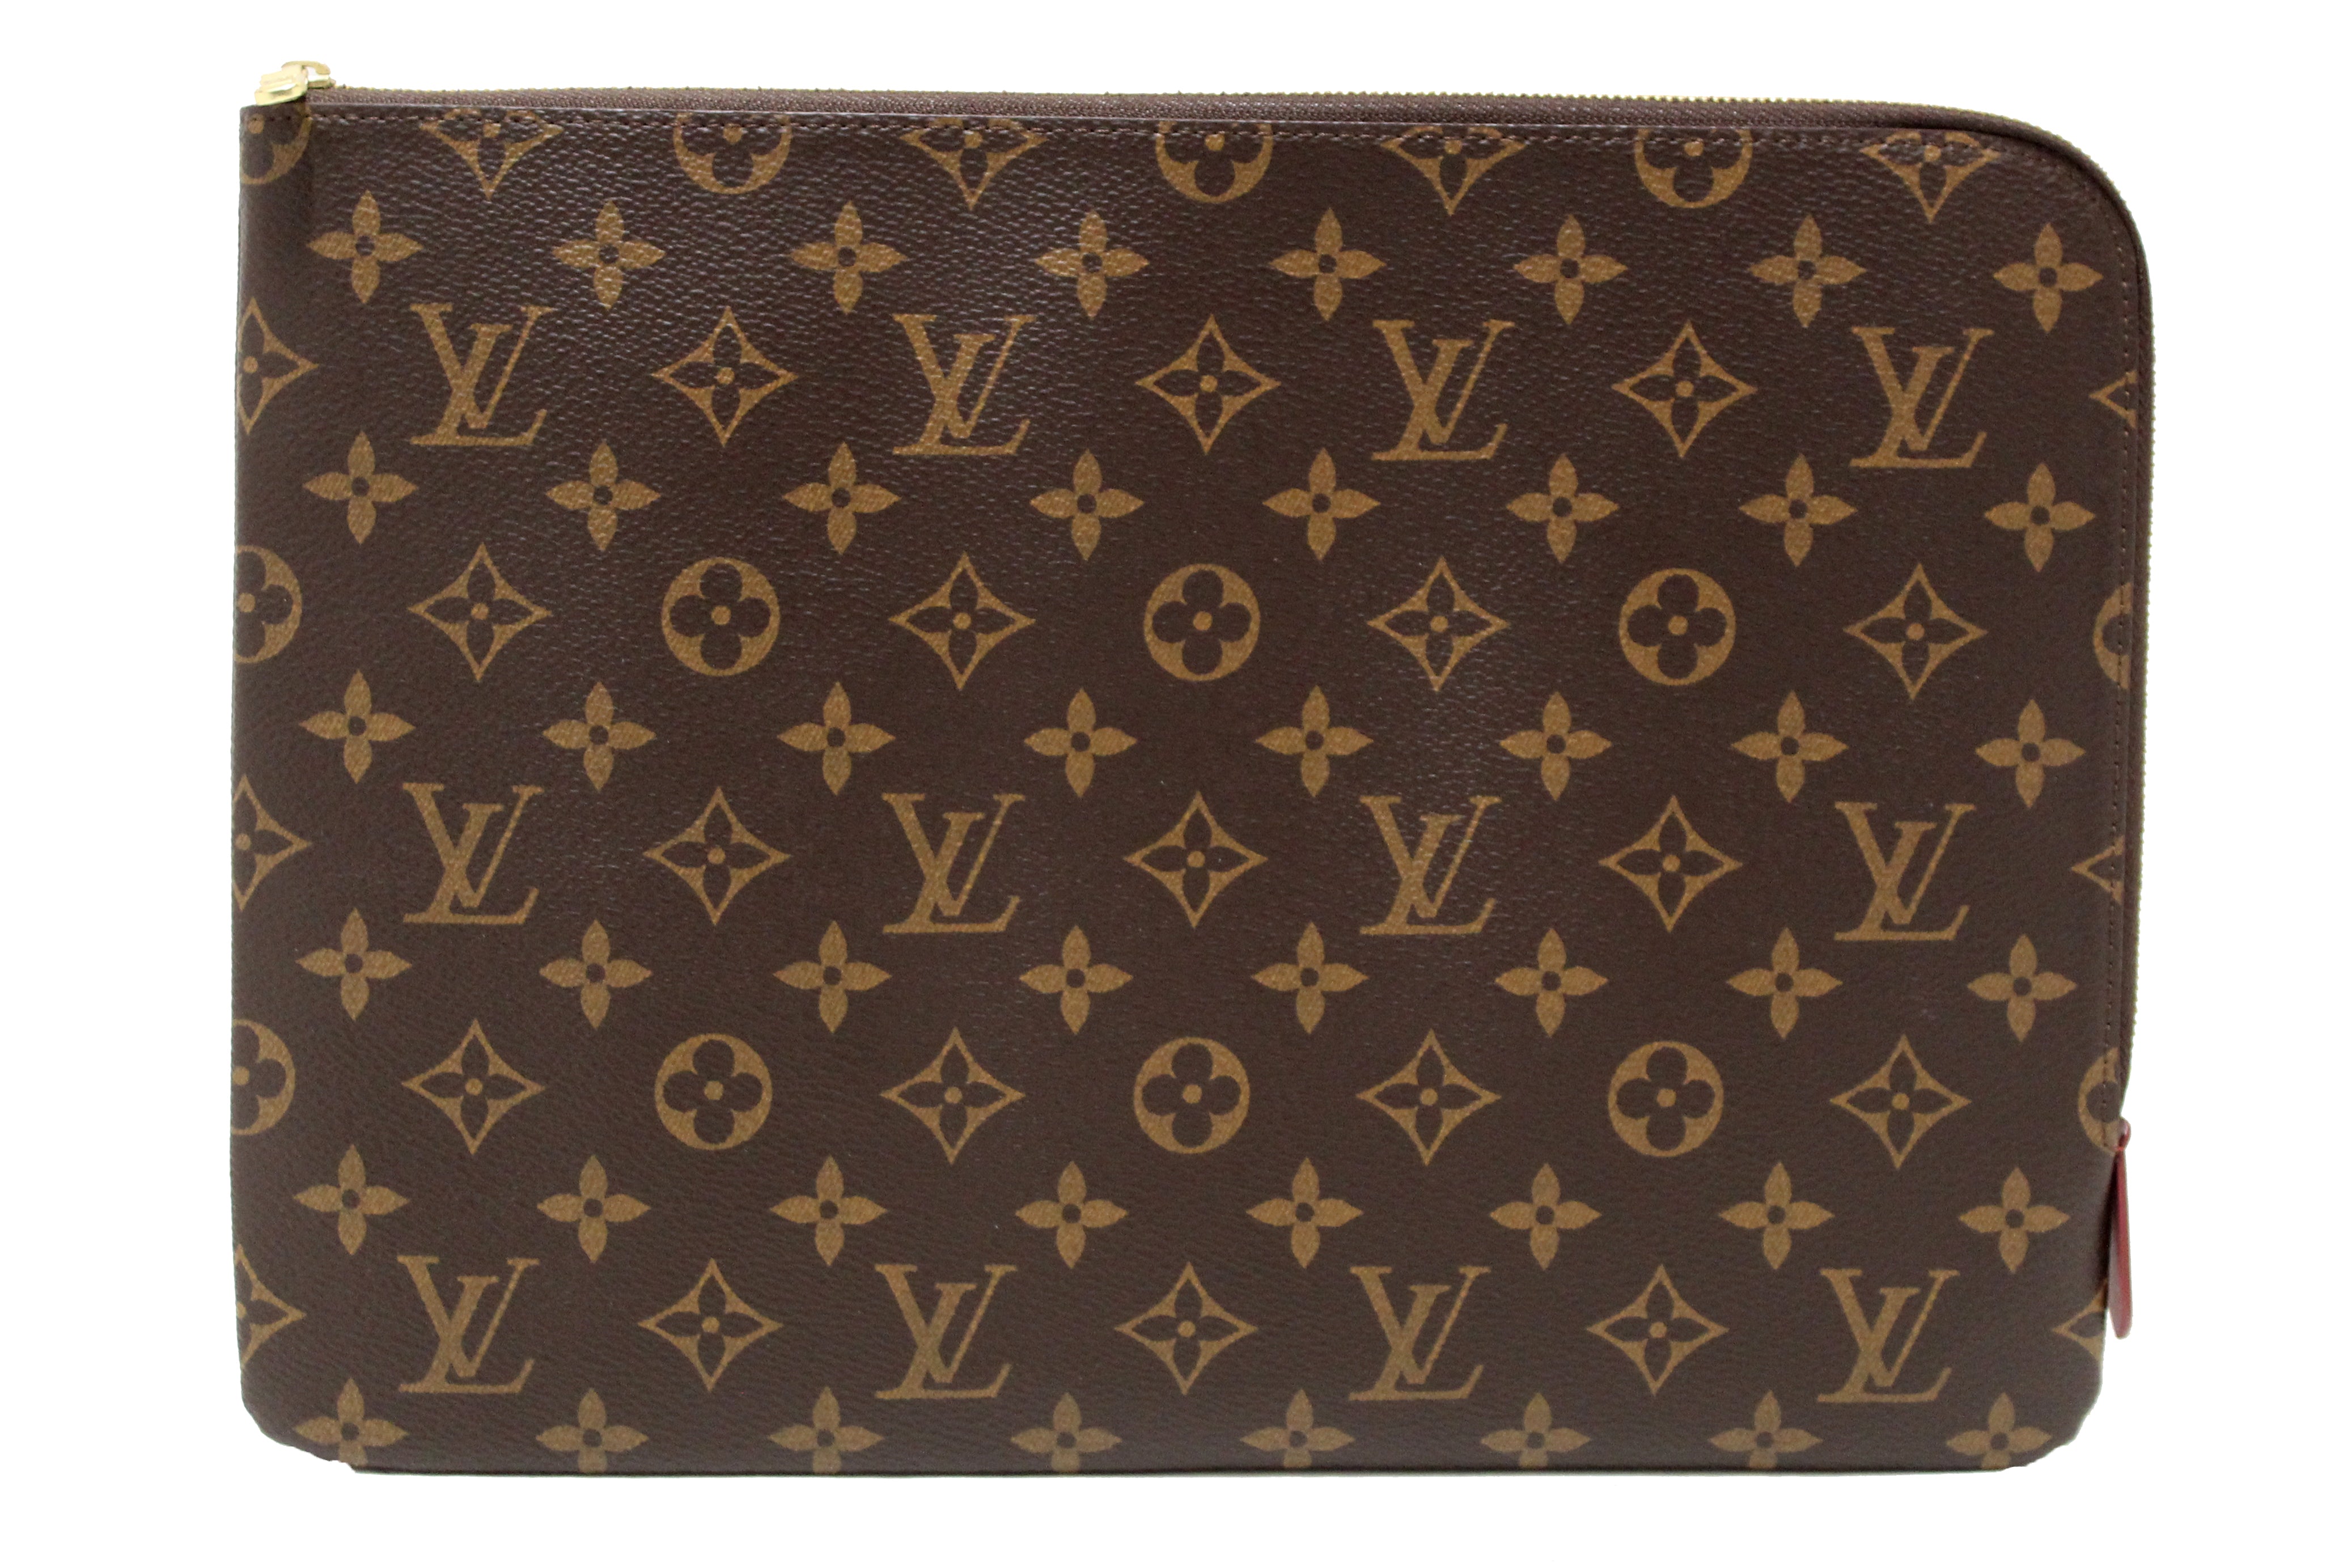 Authentic Louis Vuitton Classic Monogram Etui Voyage MM Pouch